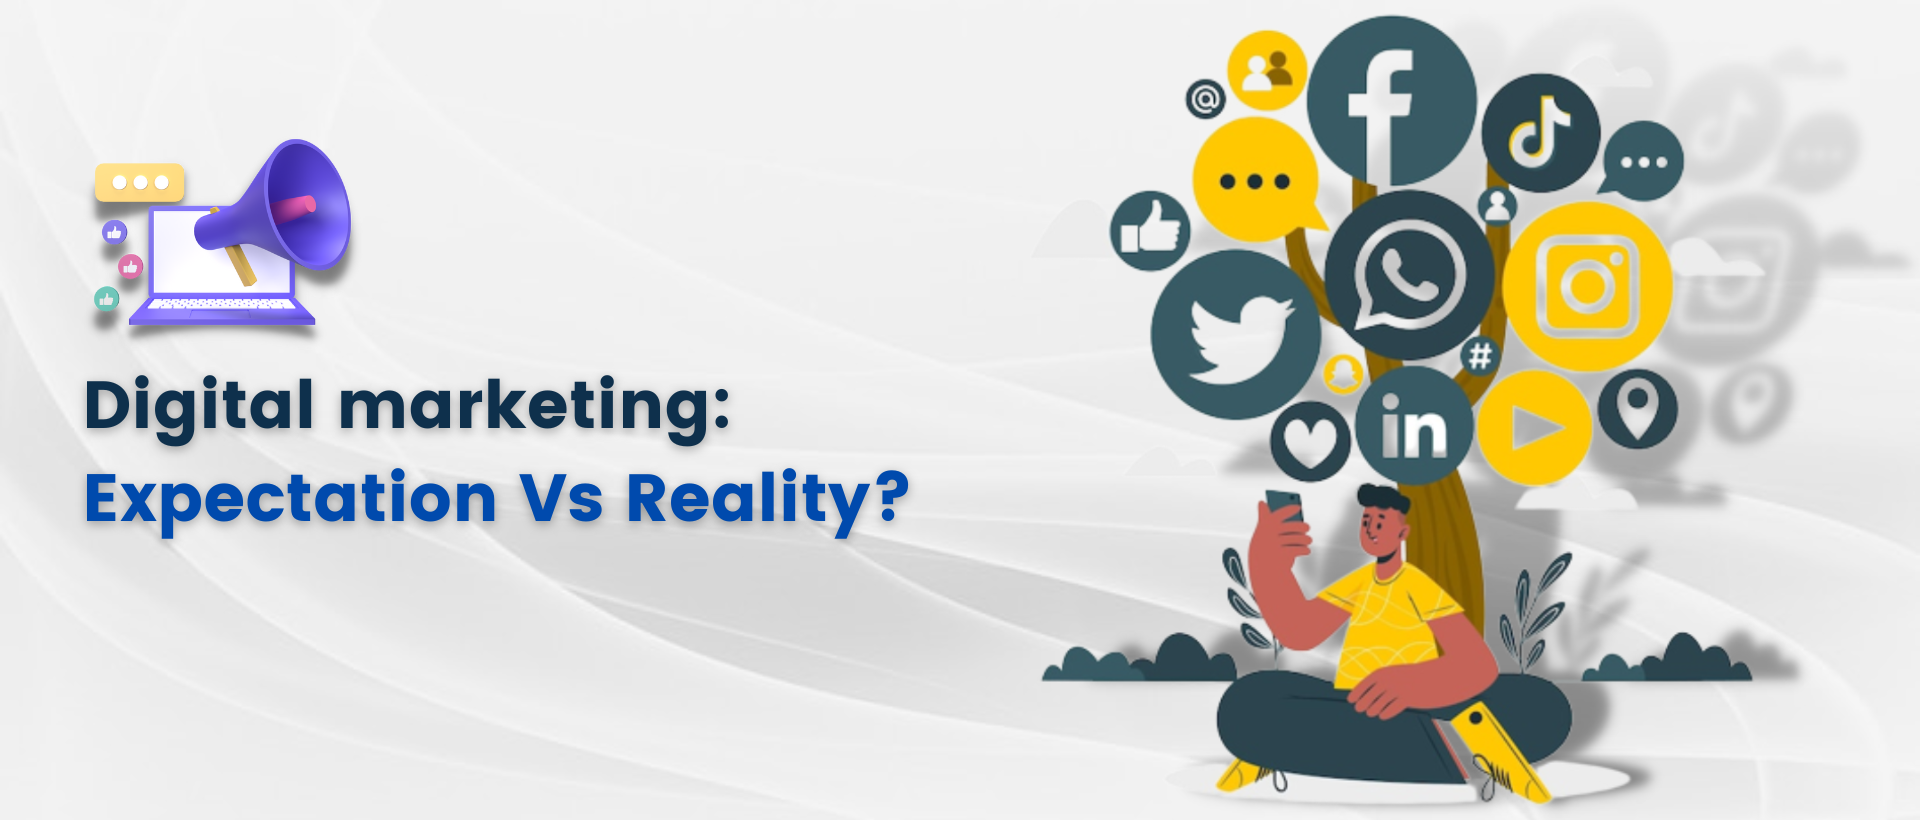 Digital marketing: Expectation Vs Reality?